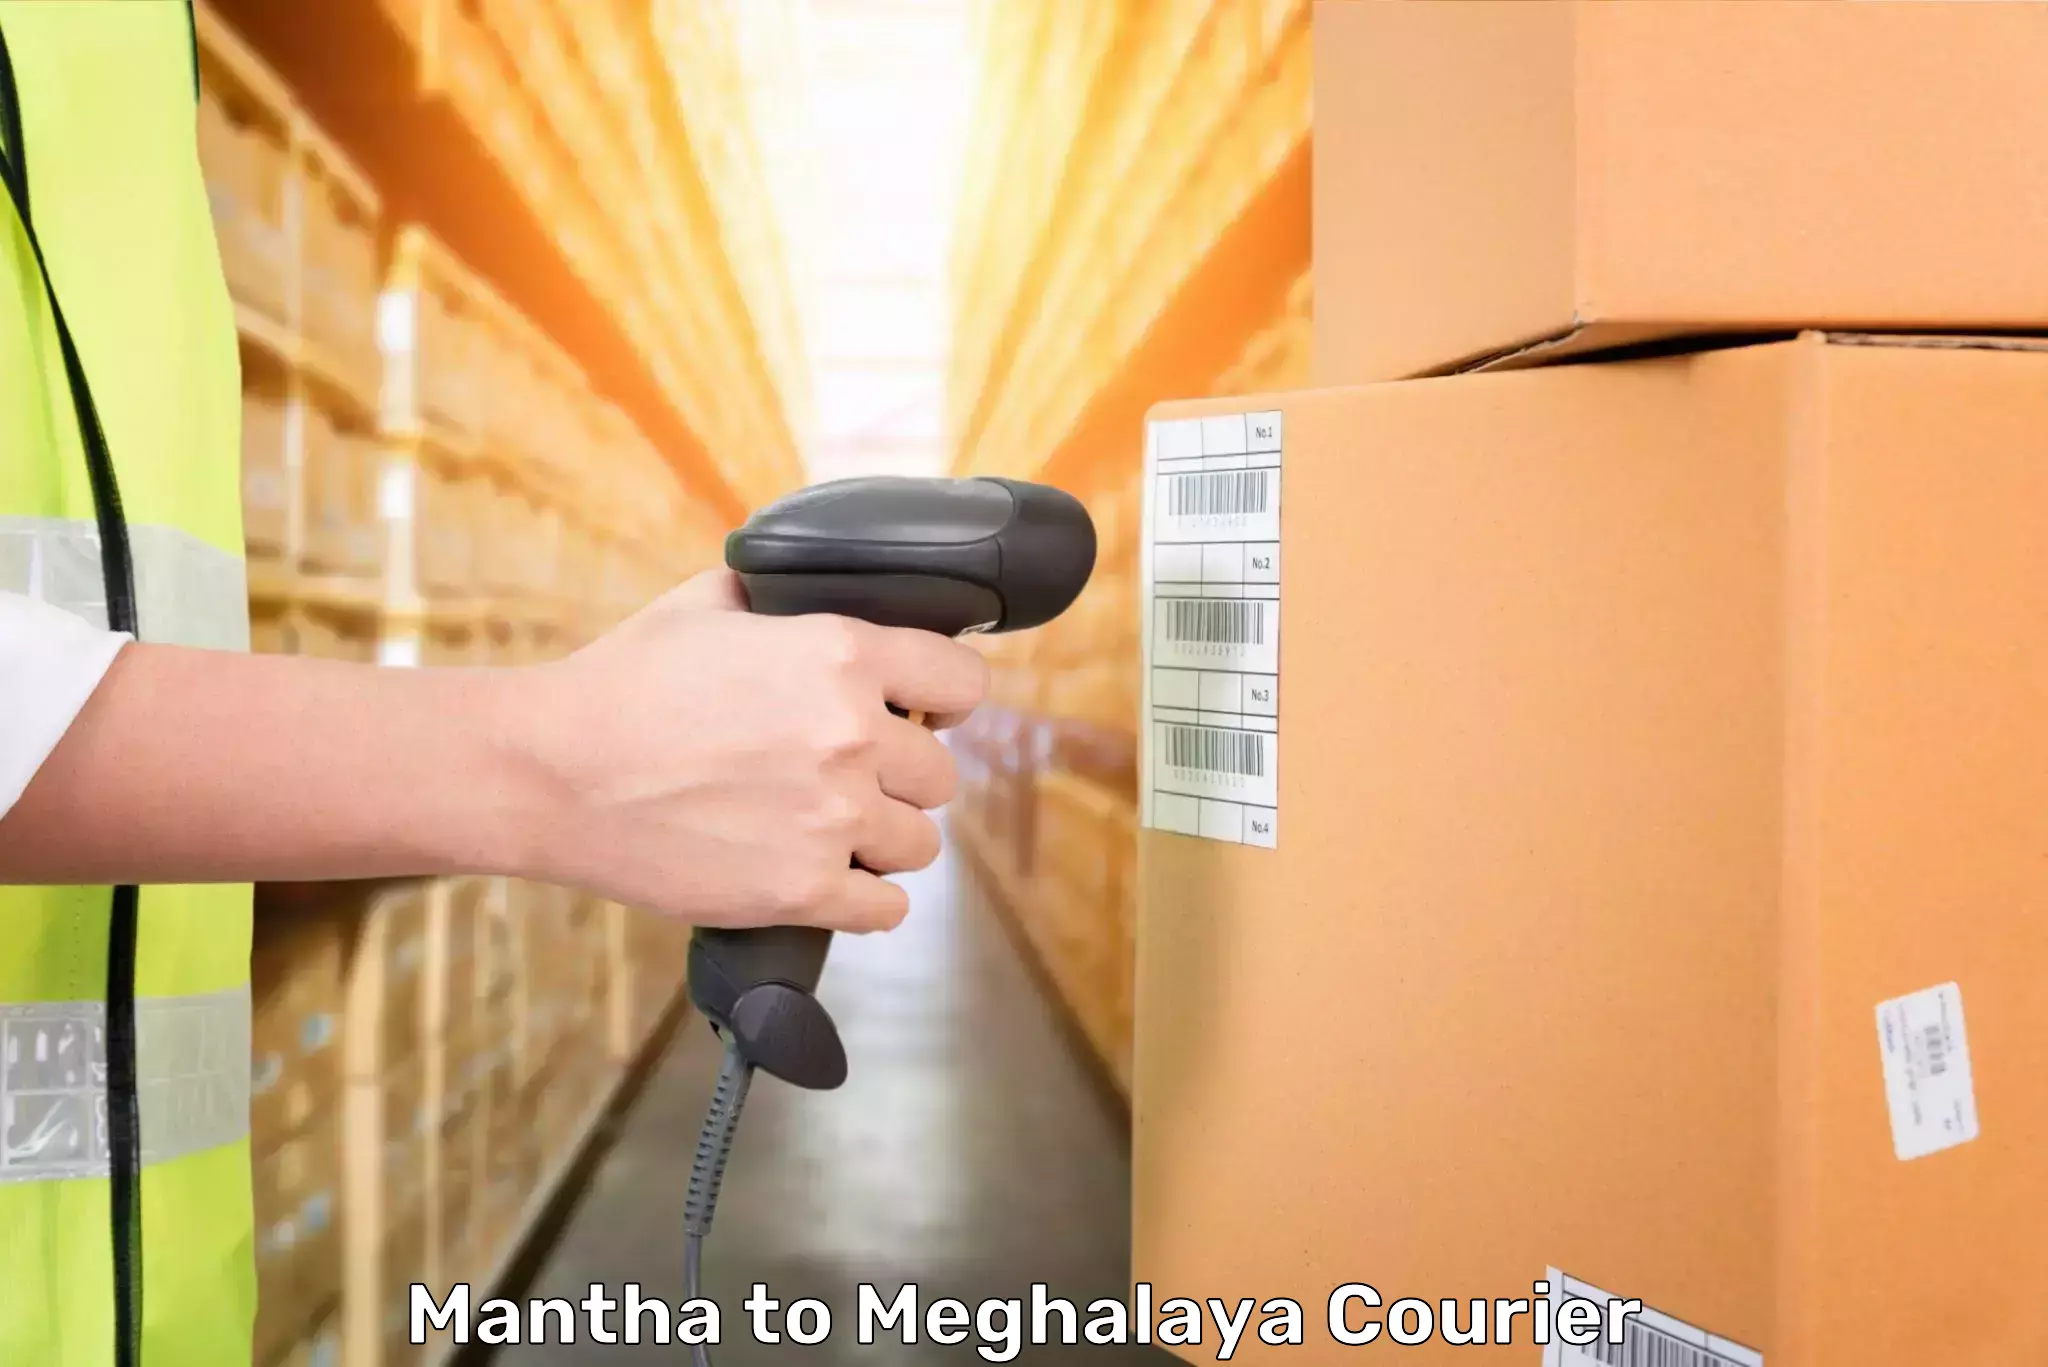 Baggage transport professionals Mantha to NIT Meghalaya